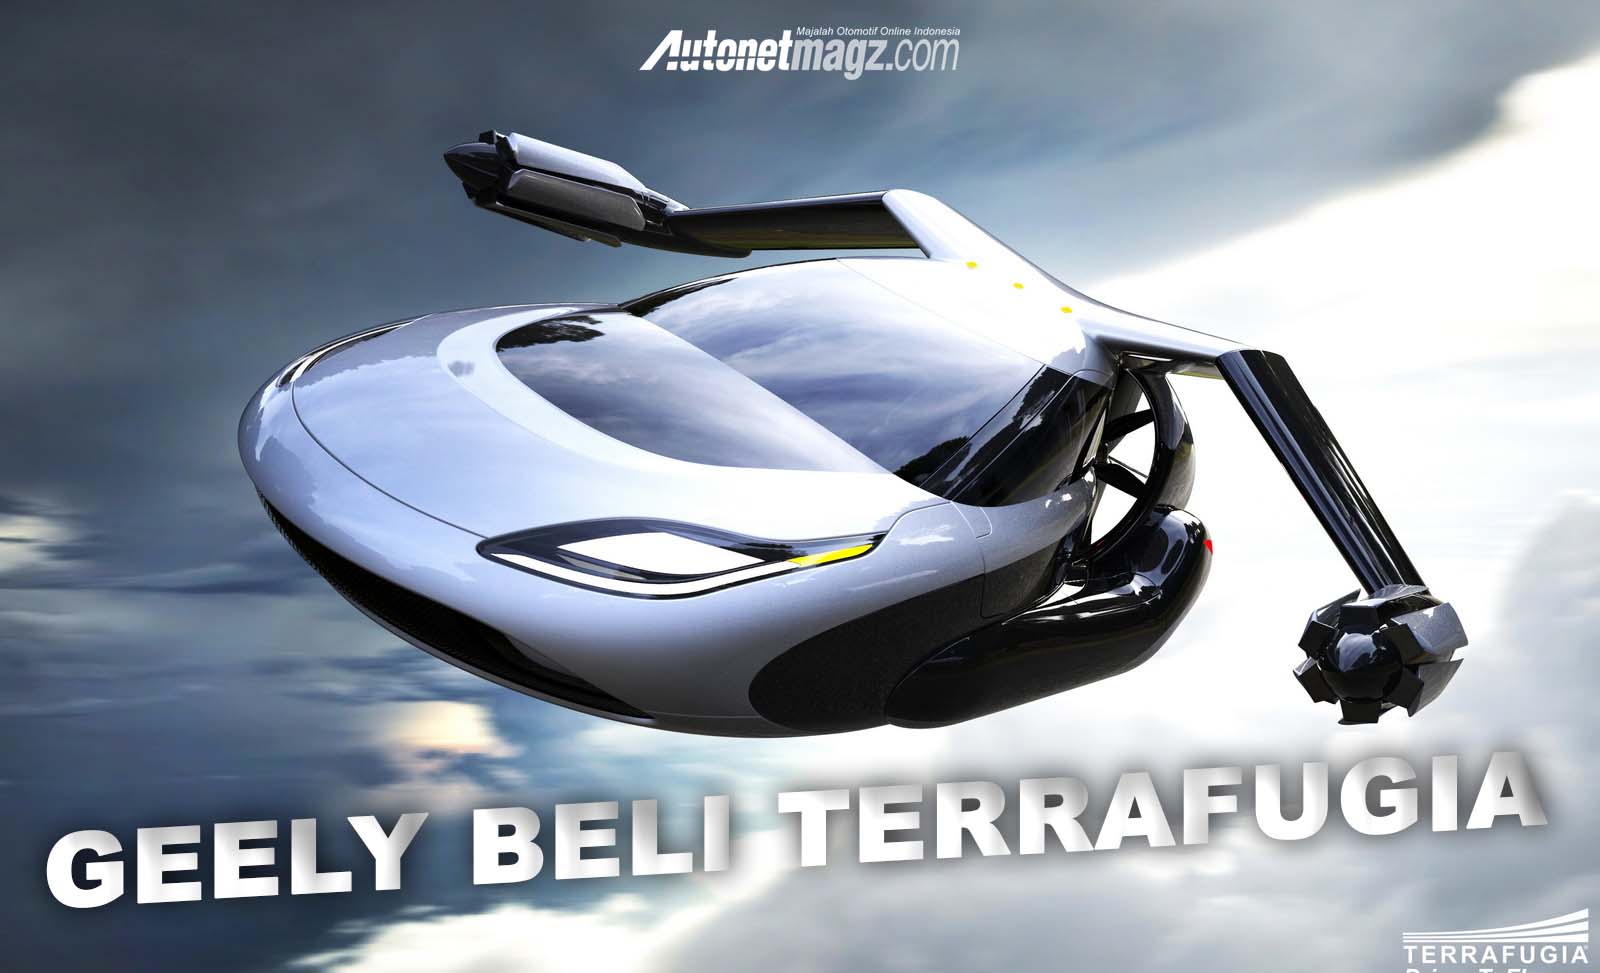 Berita, geely beli terrafugia: Geely Membeli Perusahaan Mobil Terbang, Terrafugia